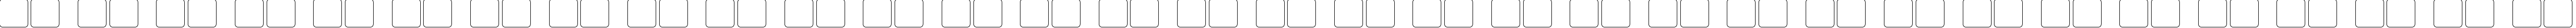 Пример написания русского алфавита шрифтом Manga Hollow